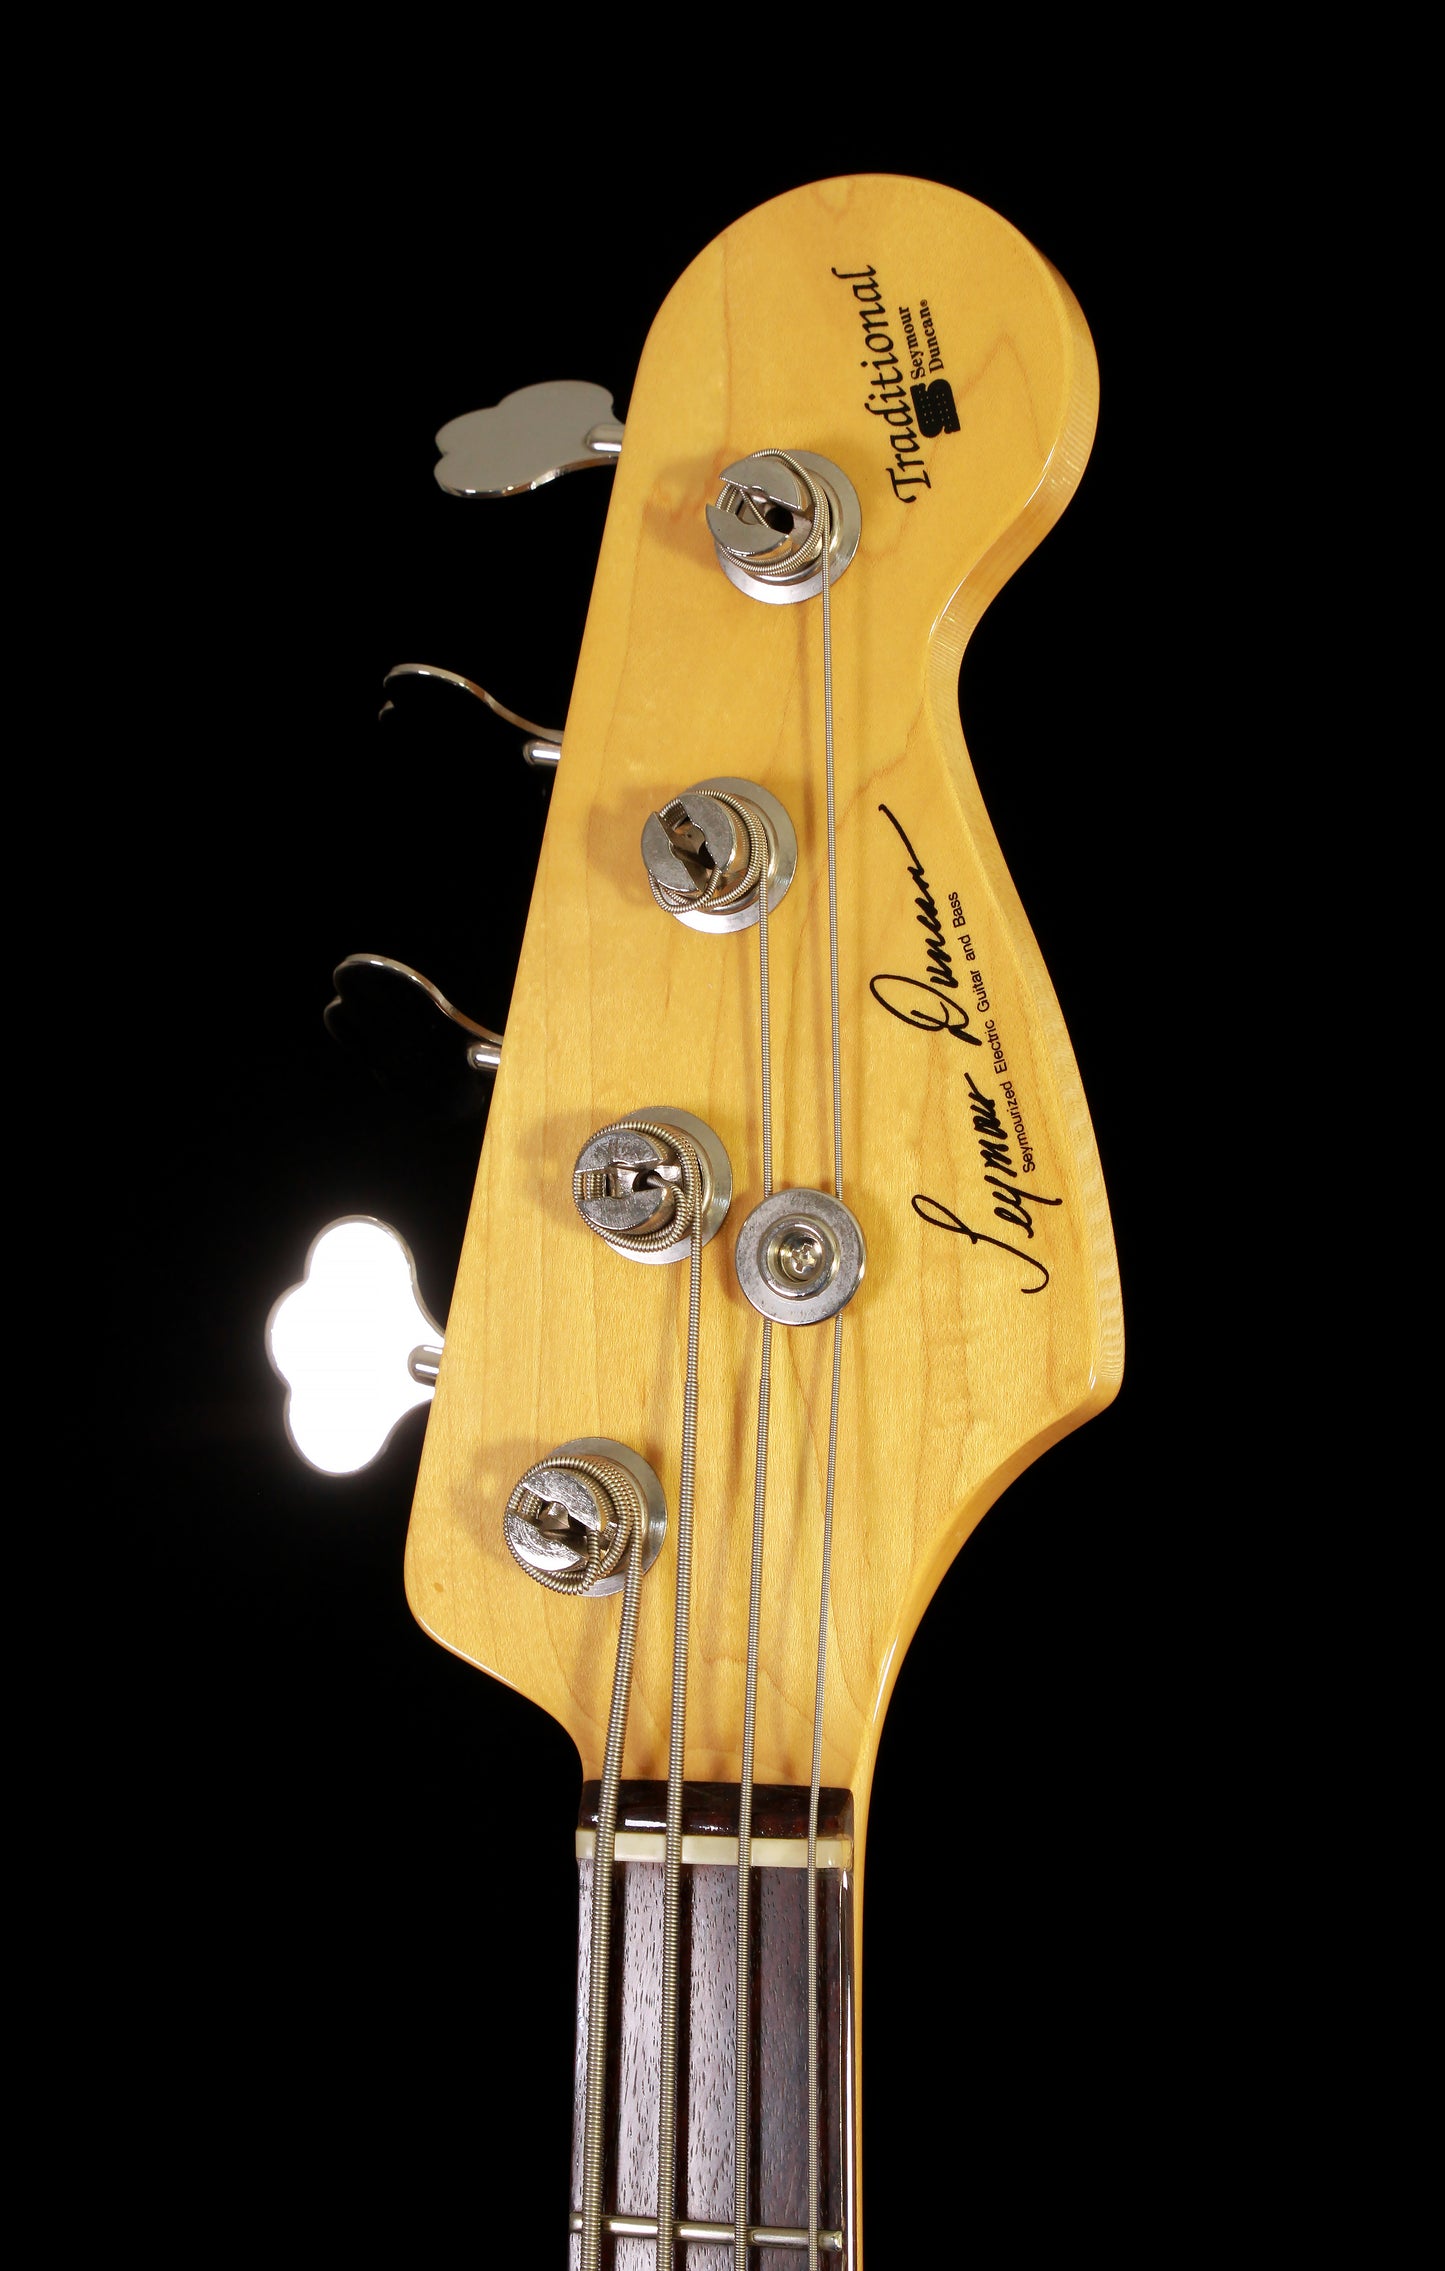 Seymour Duncan Traditional Jazz Bass Metallic Blue